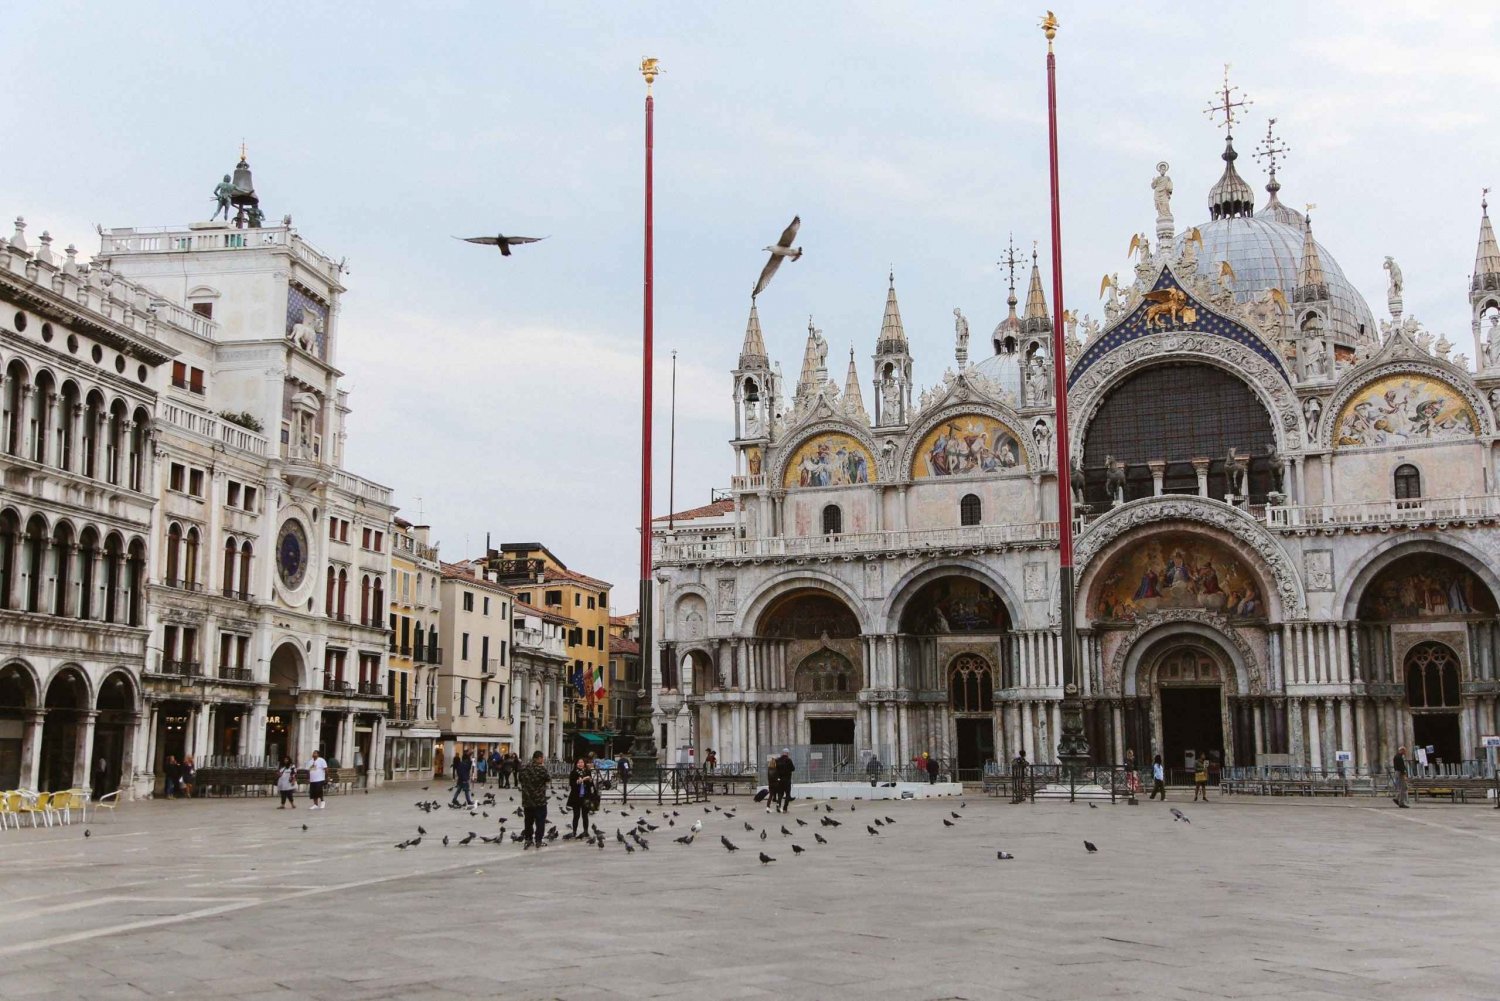 Venice: St. Mark's Basilica Fast-Track Access & Audio Guide